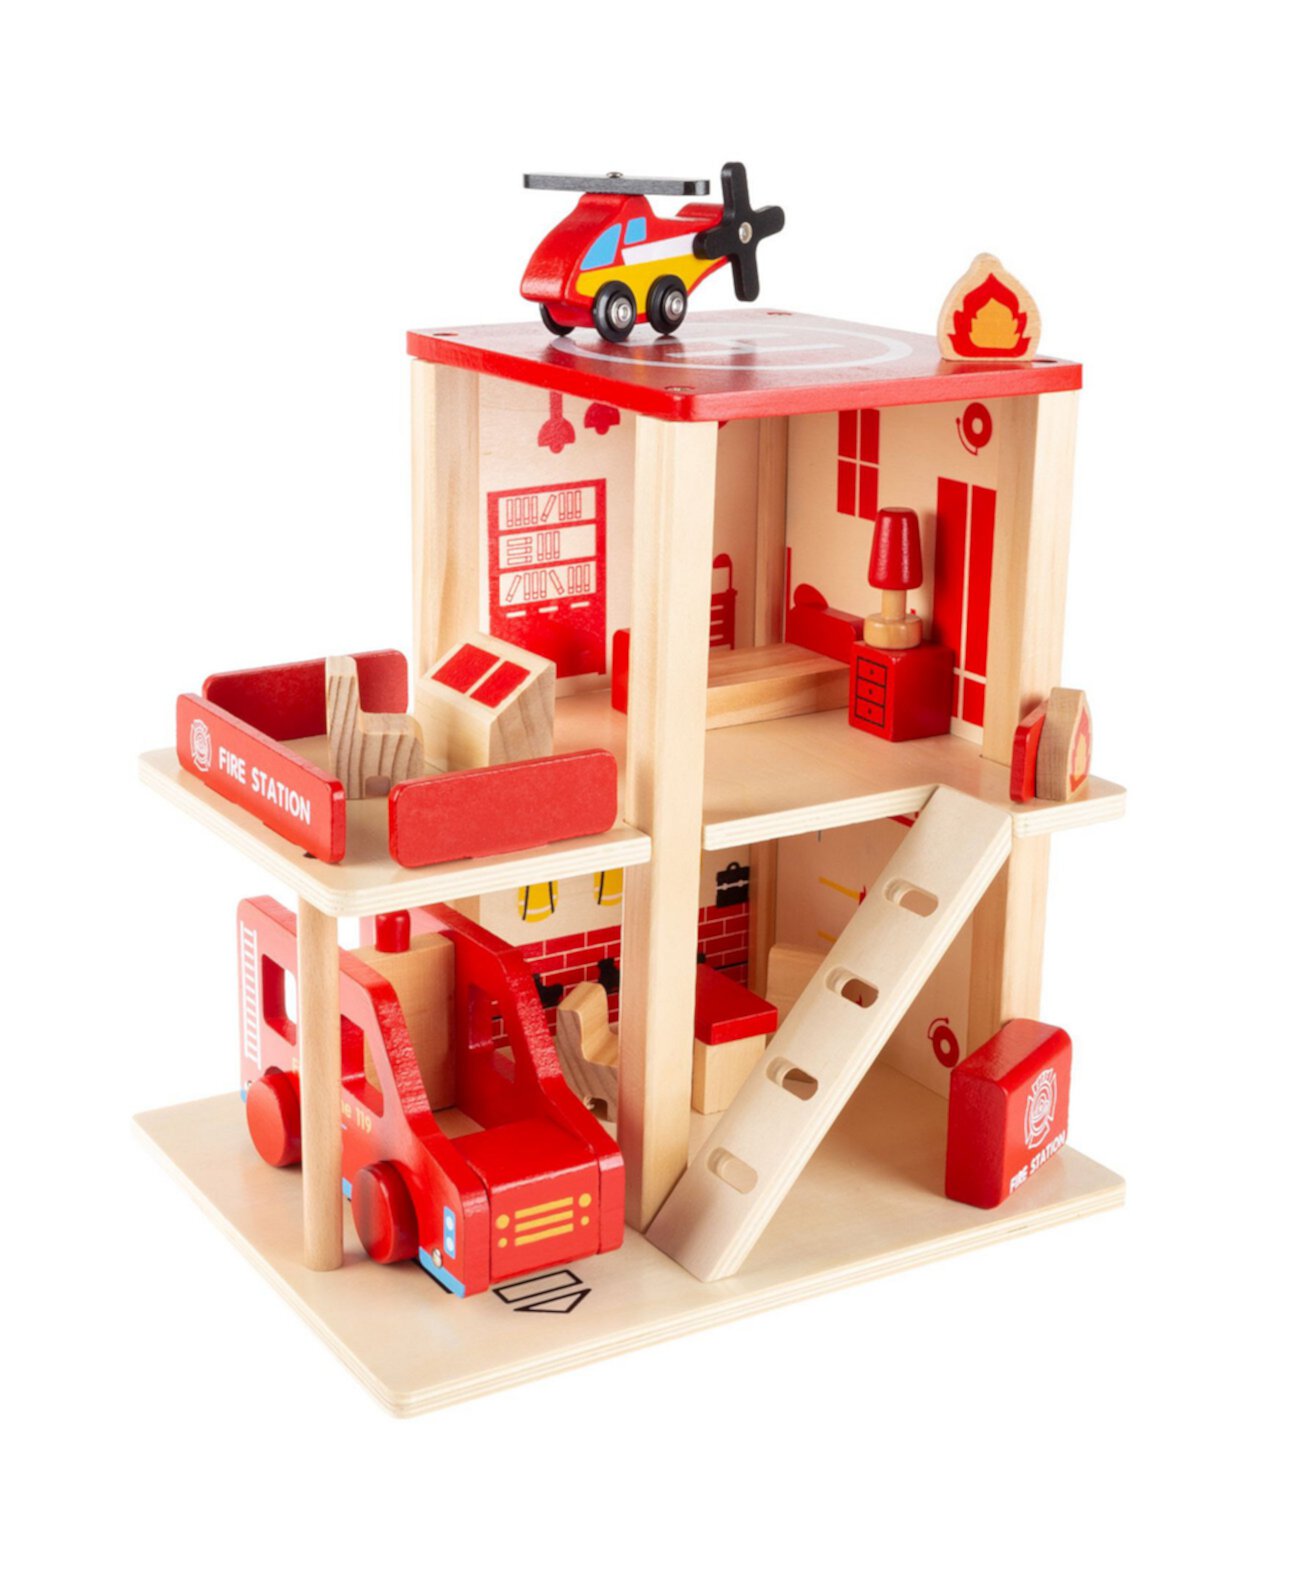 Игровой набор Hey Play Fire Station — деревянная пожарная часть, грузовик, вертолет и забавные аксессуары для пожаротушения, 3-уровневый кукольный домик для ролевых игр Trademark Global